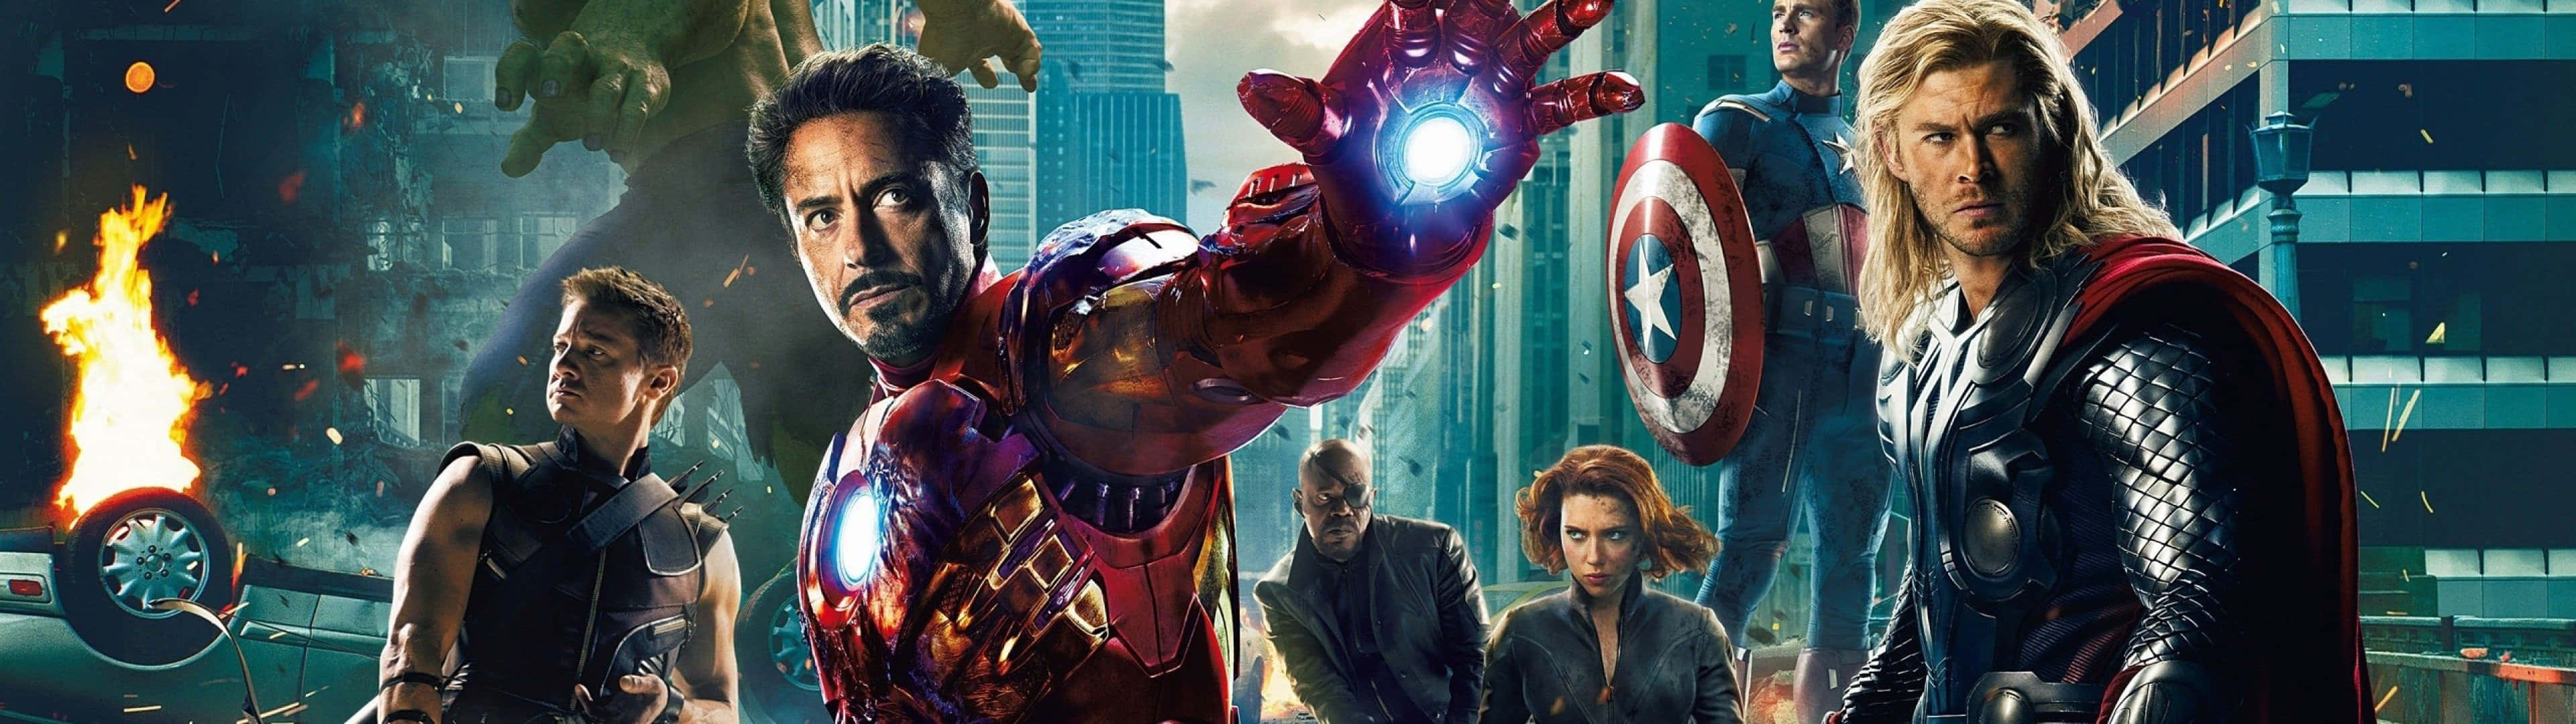 Machensie Sich Bereit Für Ein Episches Action-abenteuer Mit Den Marvel Avengers Im Dual-screen-modus. Wallpaper